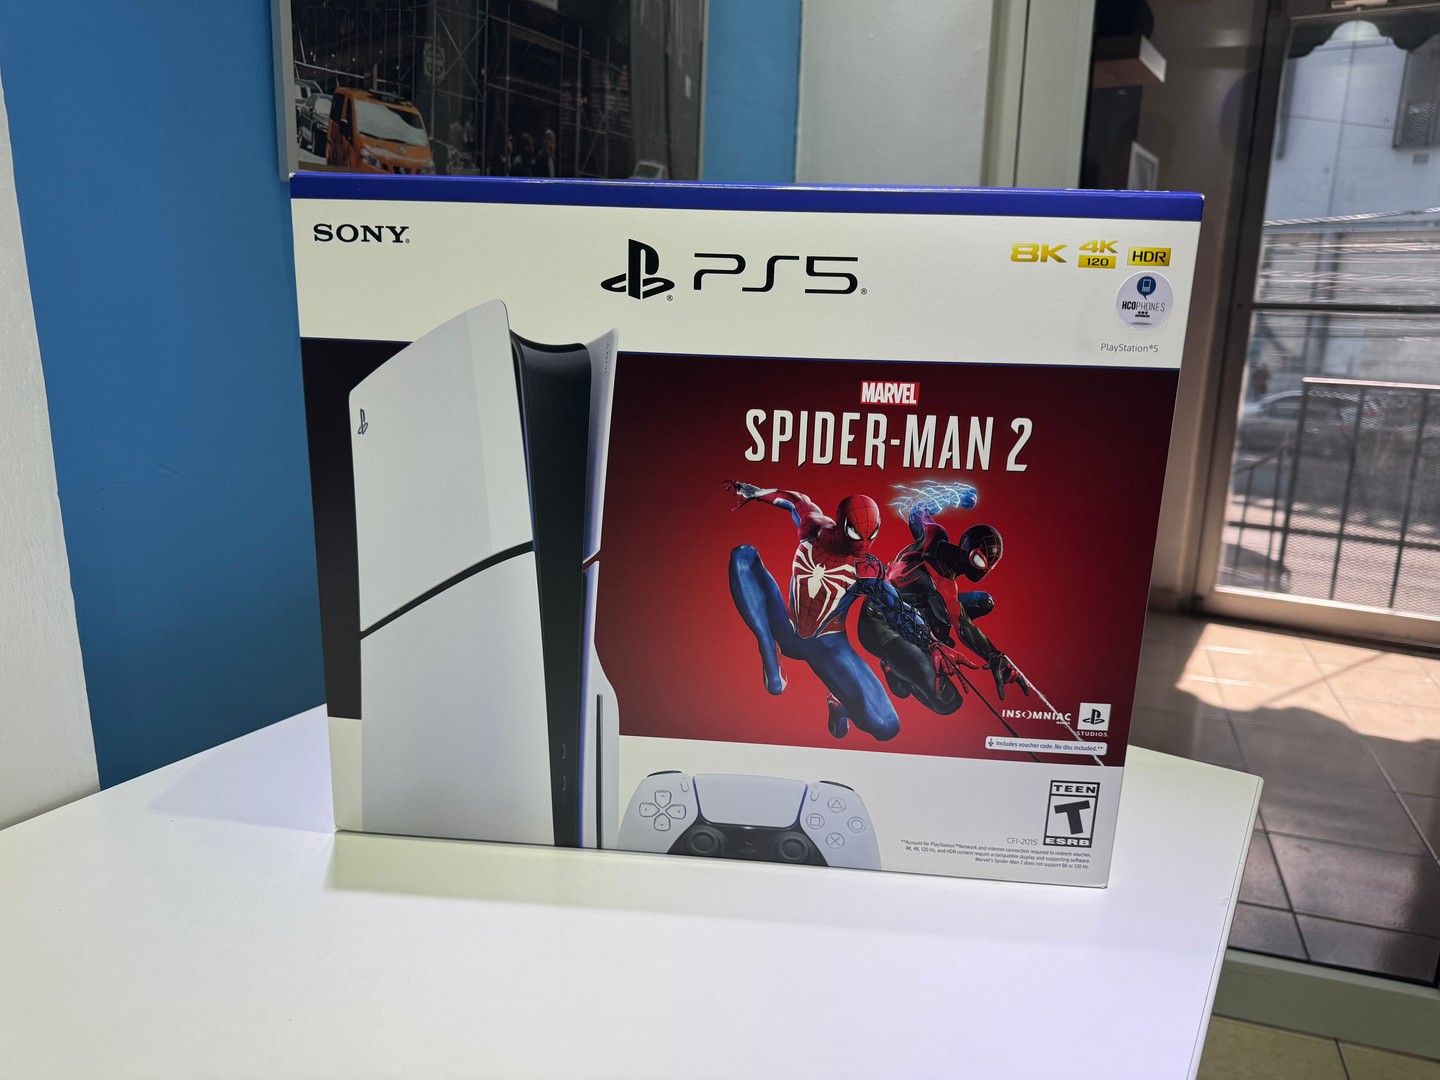 consolas y videojuegos - Consola PlayStation 5 SLIM Spider Man 2 Edition Version Disco, $ 36,500 NEG